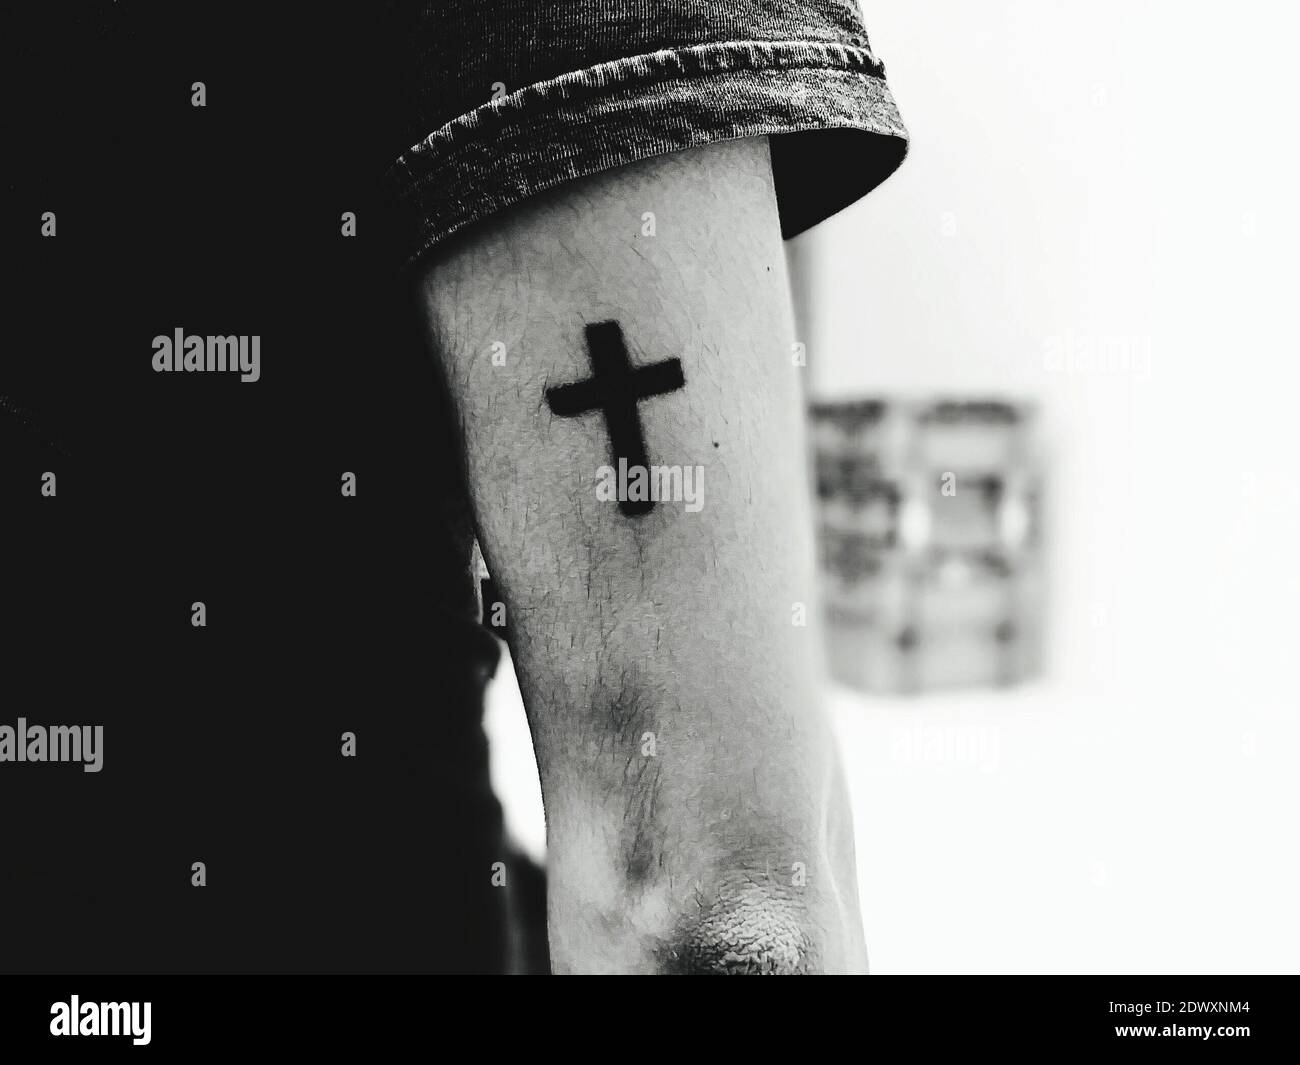 30 Superb Cross Tattoos On Hand  Tattoo Designs  TattoosBagcom